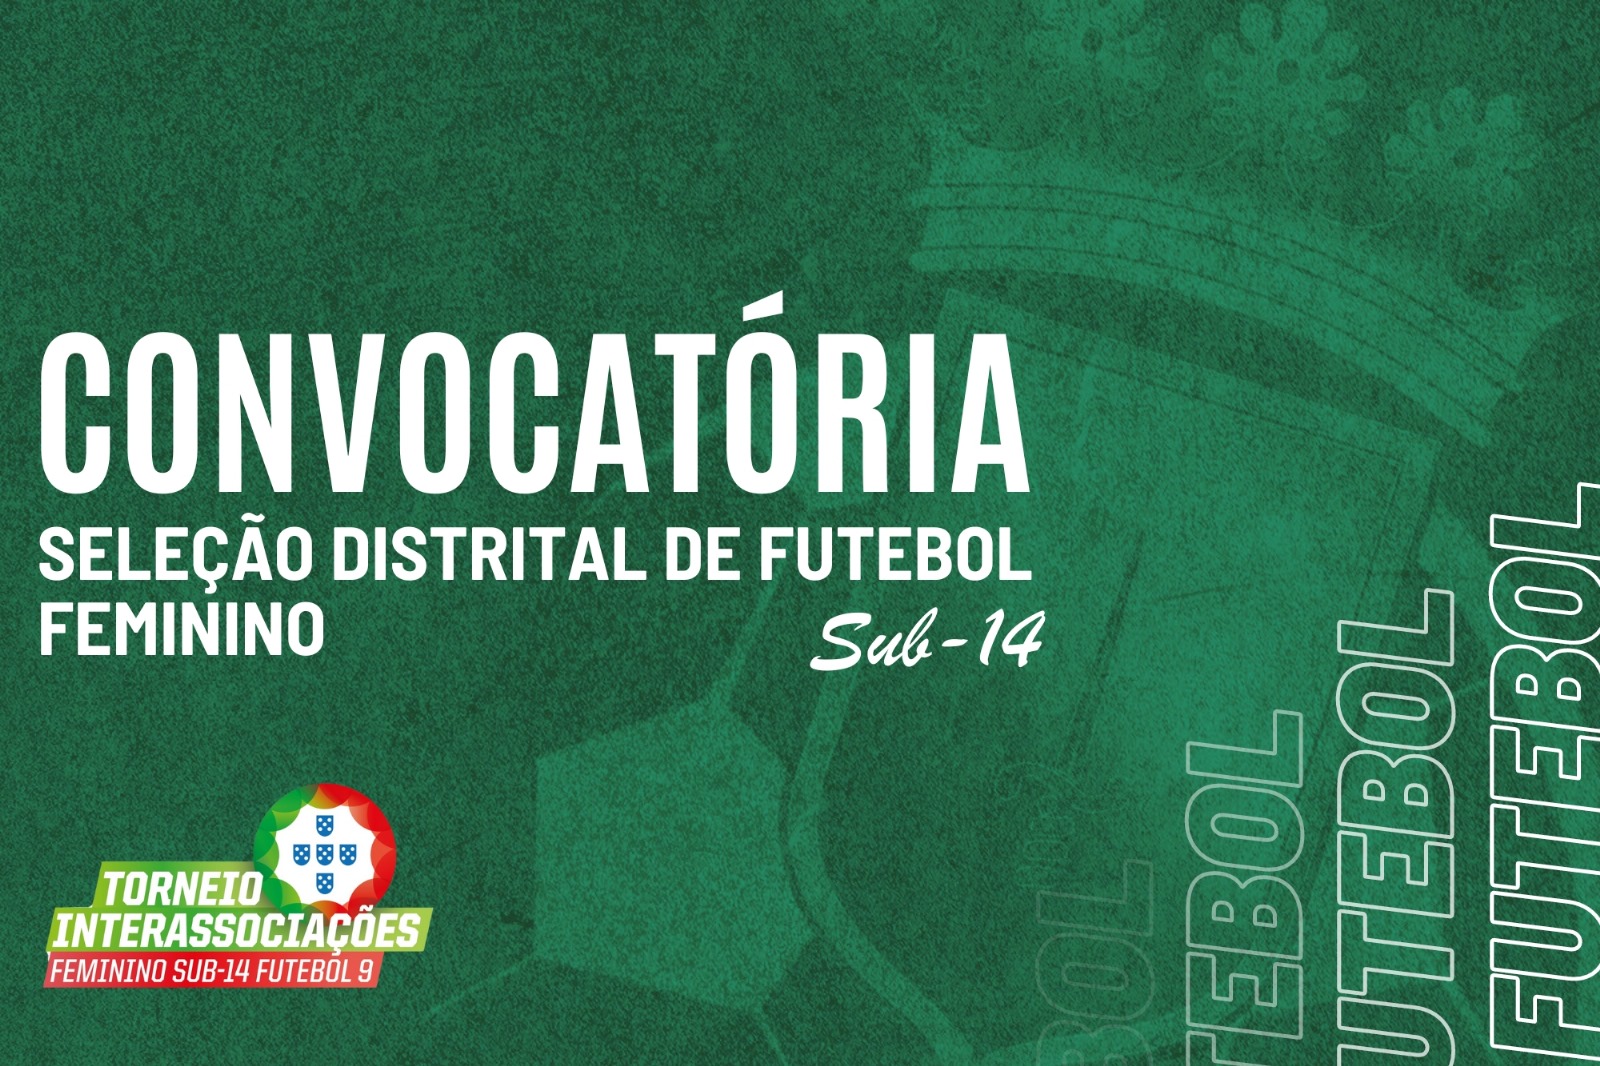 Convocatória | Torneio Interassociações de Futebol Feminino de Sub-14